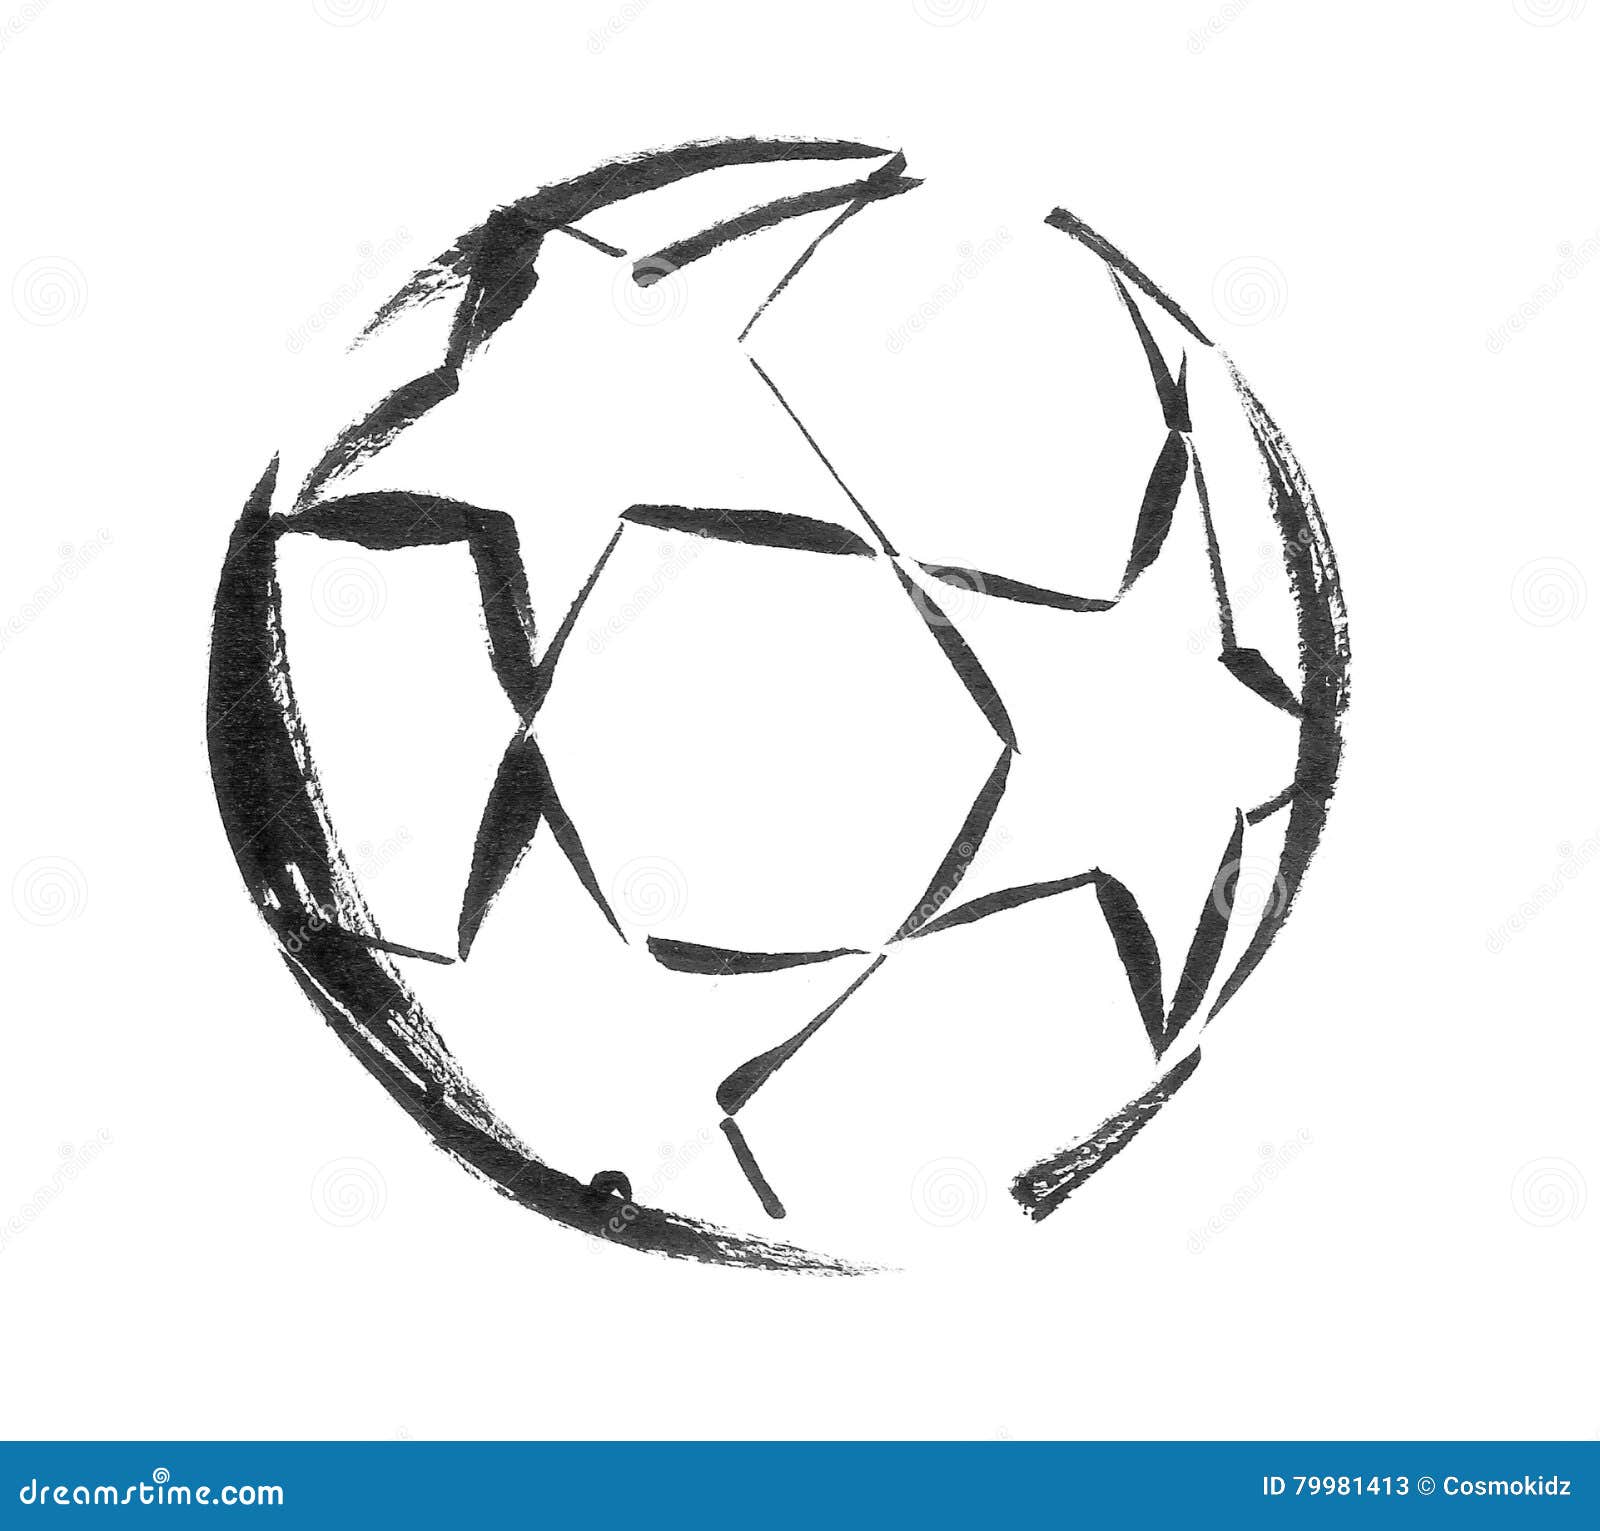 Футбольный мяч рисунок поэтапно